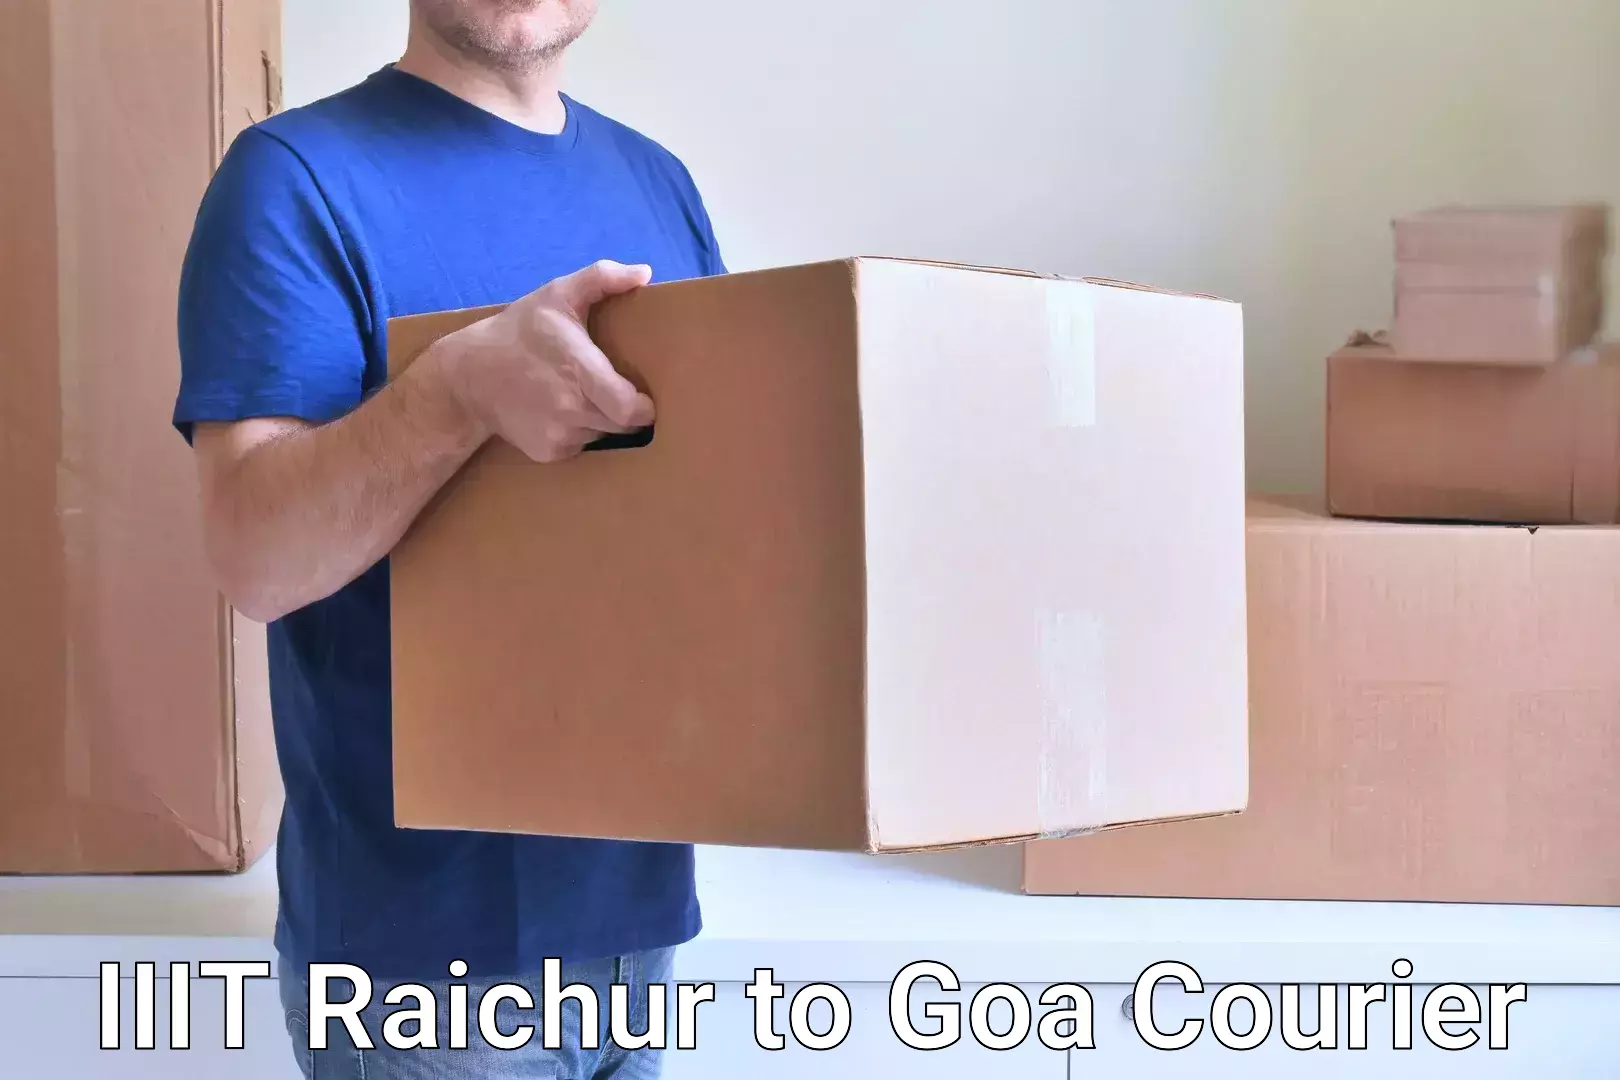 Ground shipping IIIT Raichur to Goa